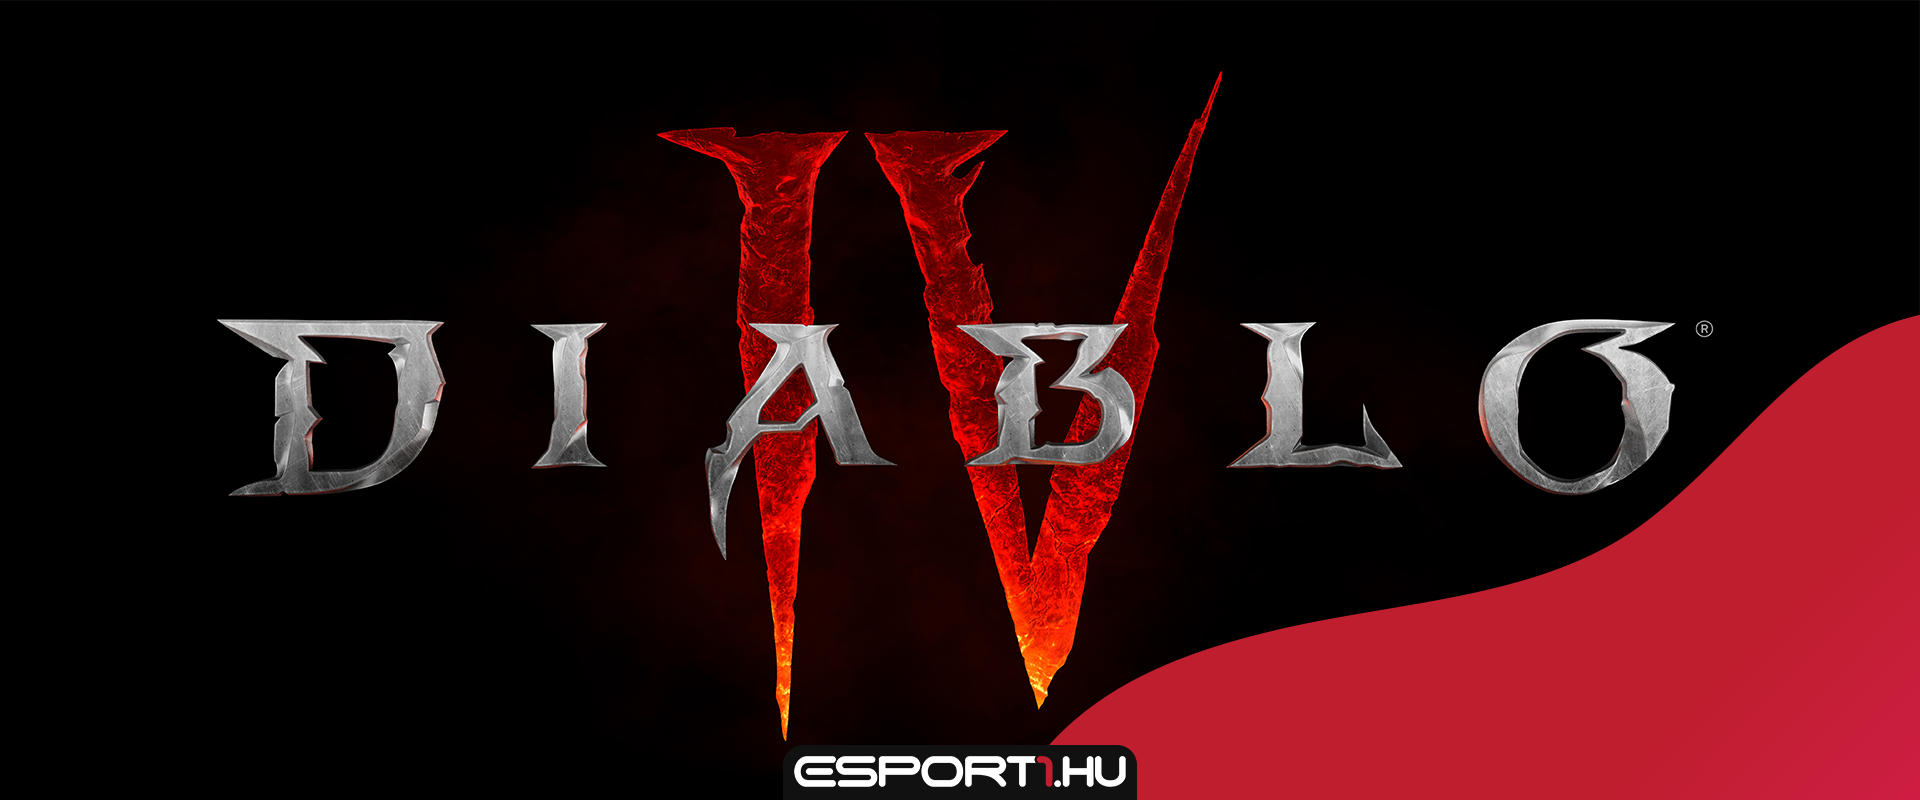 Üdv újra a pokolban: videón a Diablo IV!